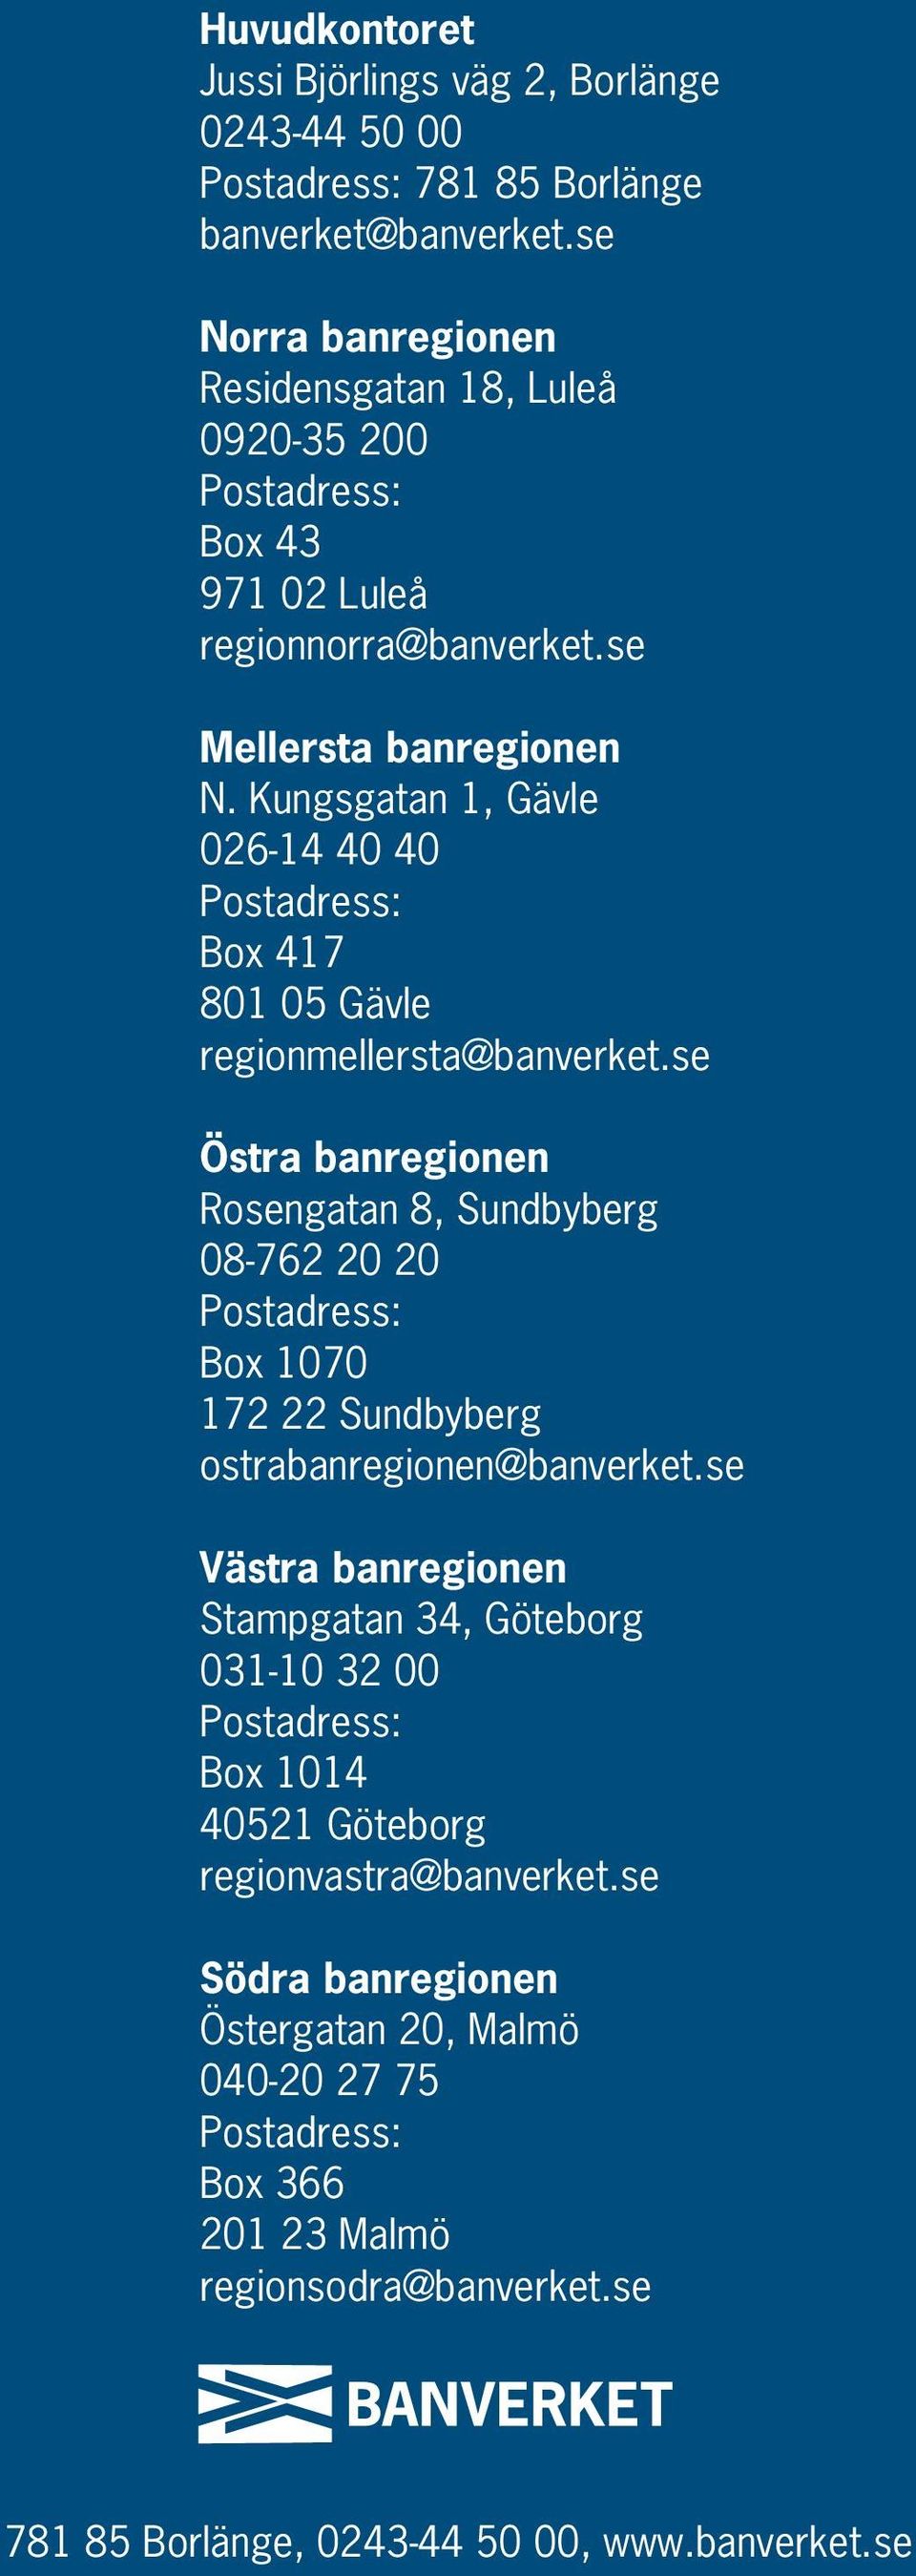 Kungsgatan 1, Gävle 026-14 40 40 Postadress: Box 417 801 05 Gävle regionmellersta@banverket.